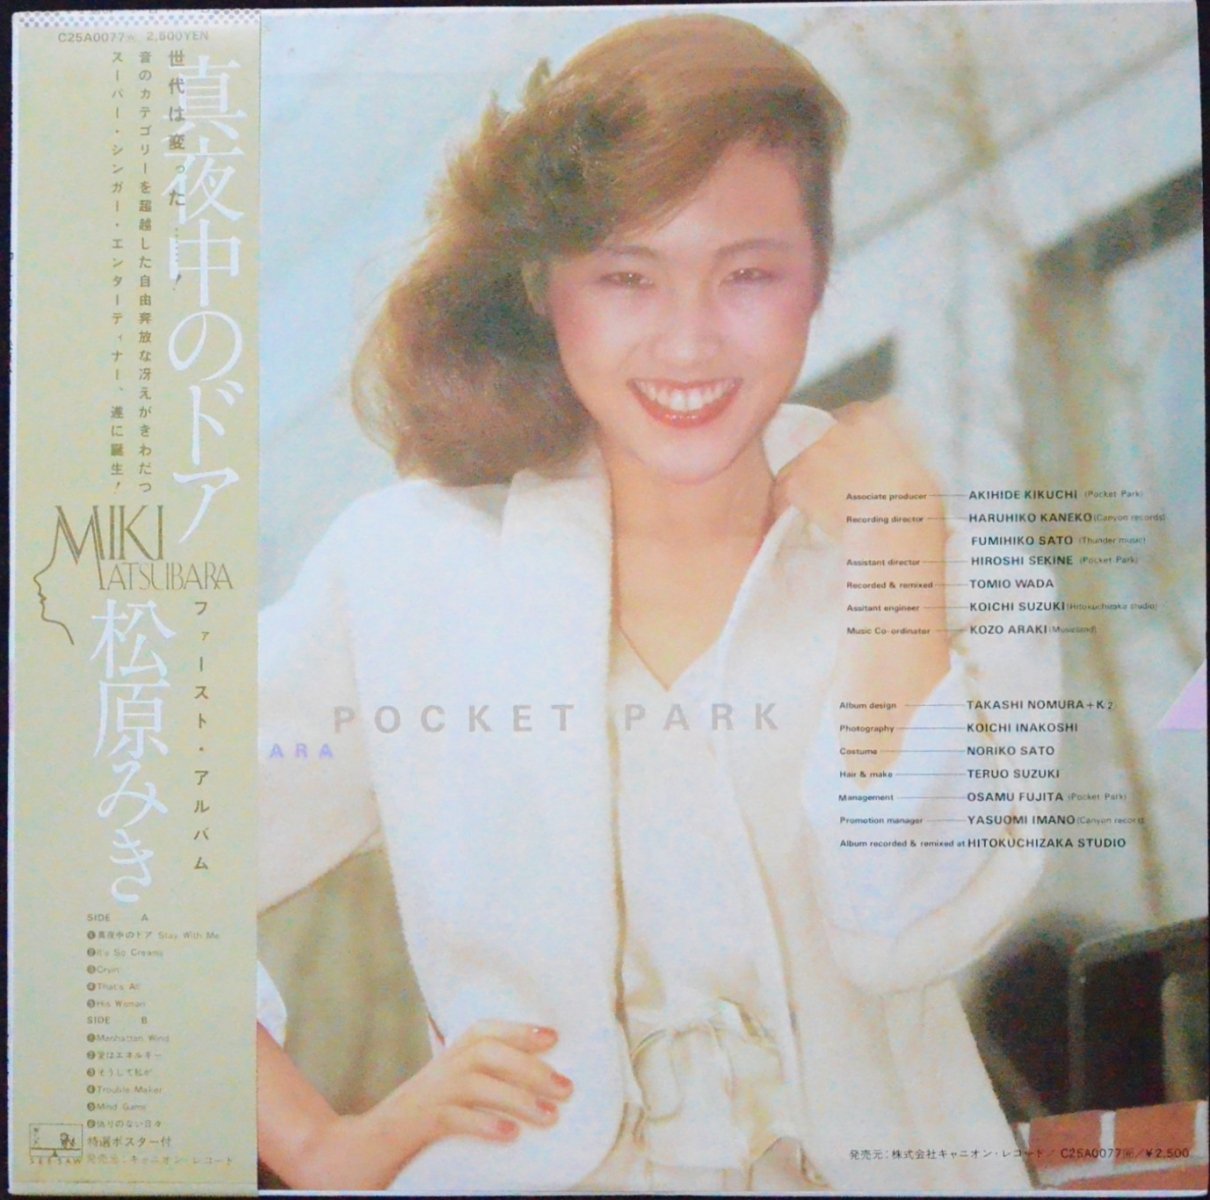 松原みき MIKI MATSUBARA / ポケットパーク POCKET PARK (LP)